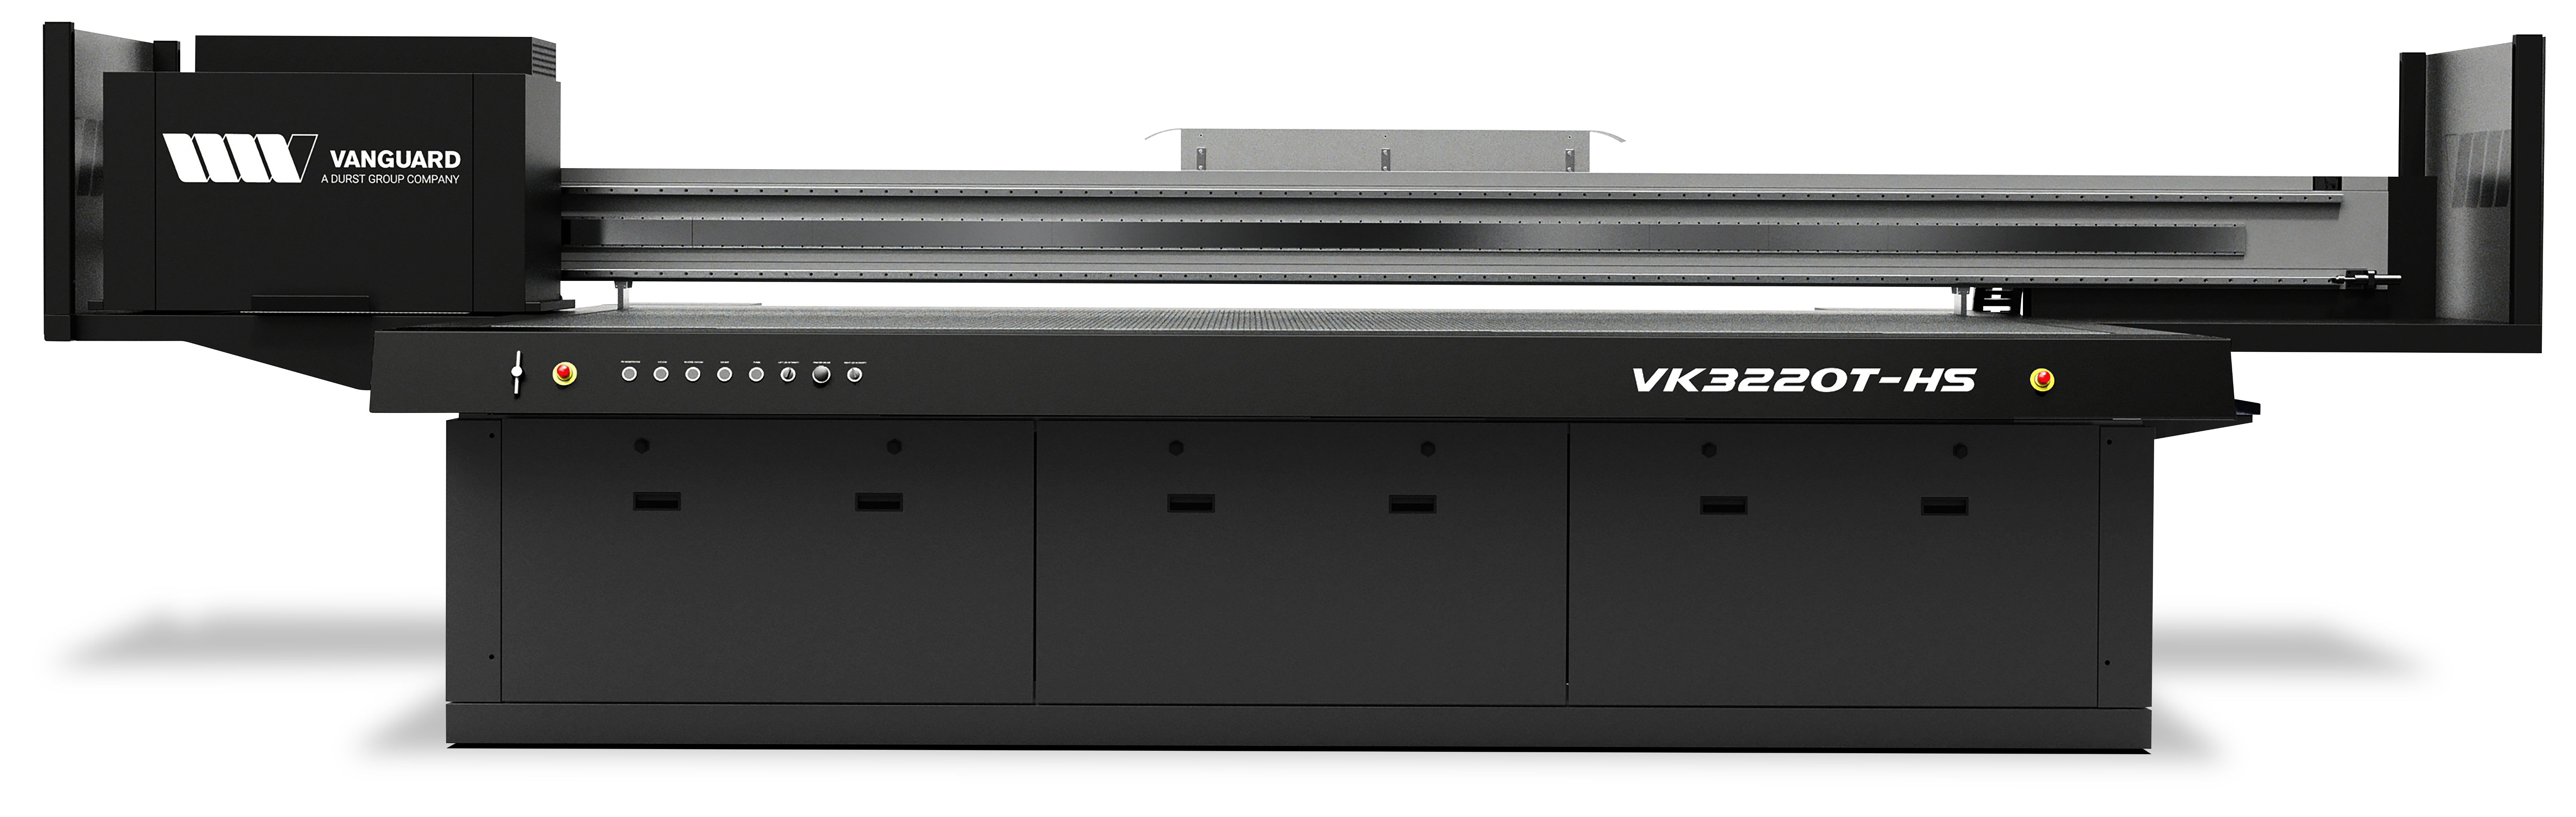 VK3220T-HS UV-LED Flatbed Printer